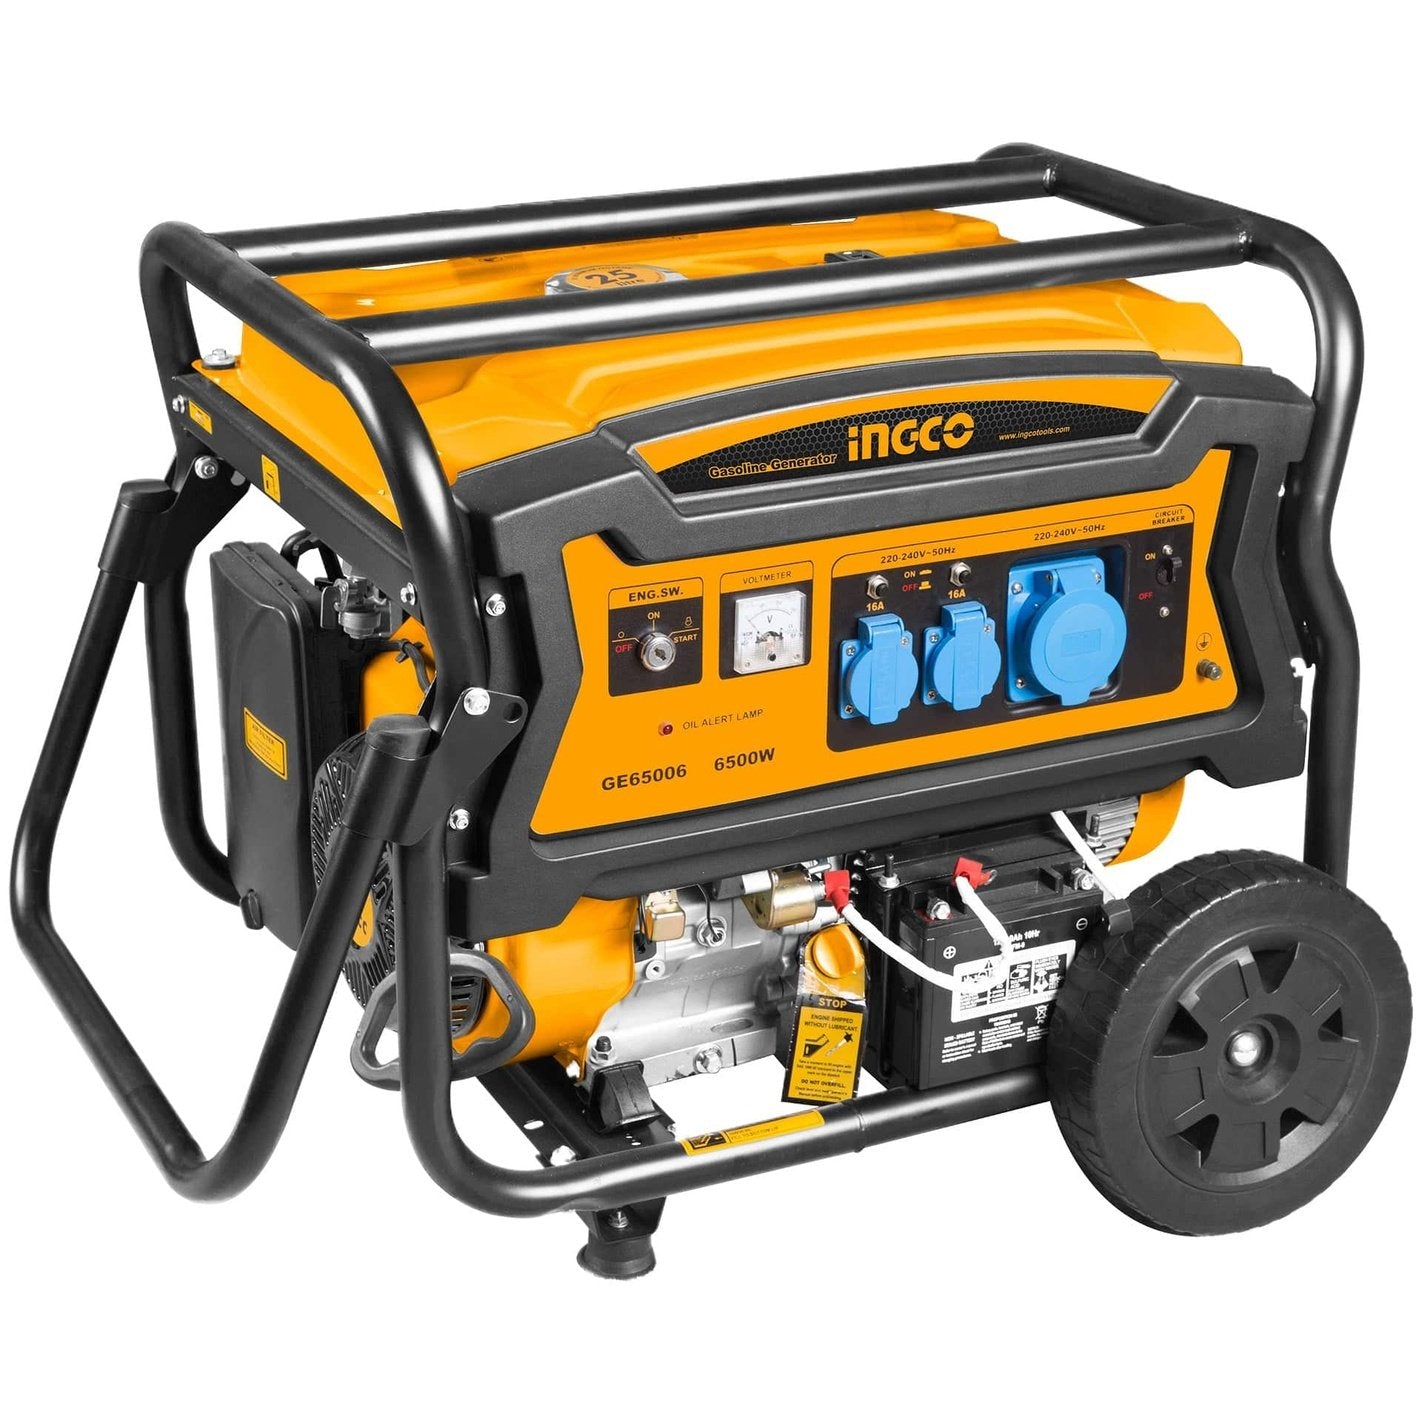 Ingco Gasoline Generator 7.5KW - GE75006 - Buy Online in Accra